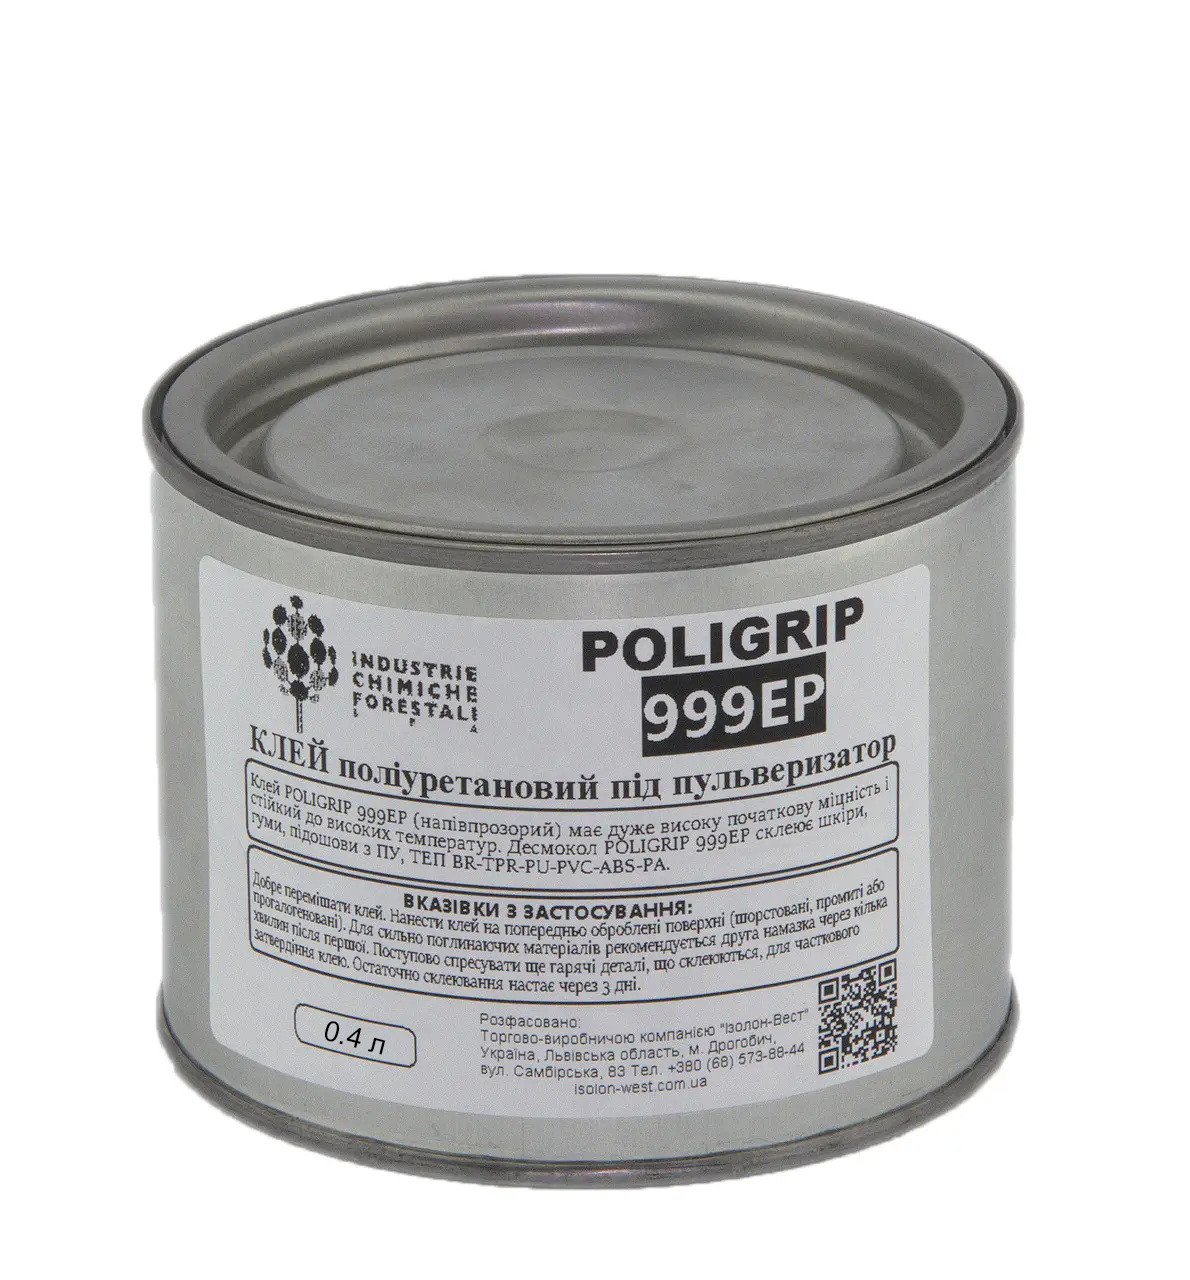 Клей Poligrip 999 EP (під пульверизатор) - поліуретановий клей з підвищеною термостійкістю, Італія анонс фото